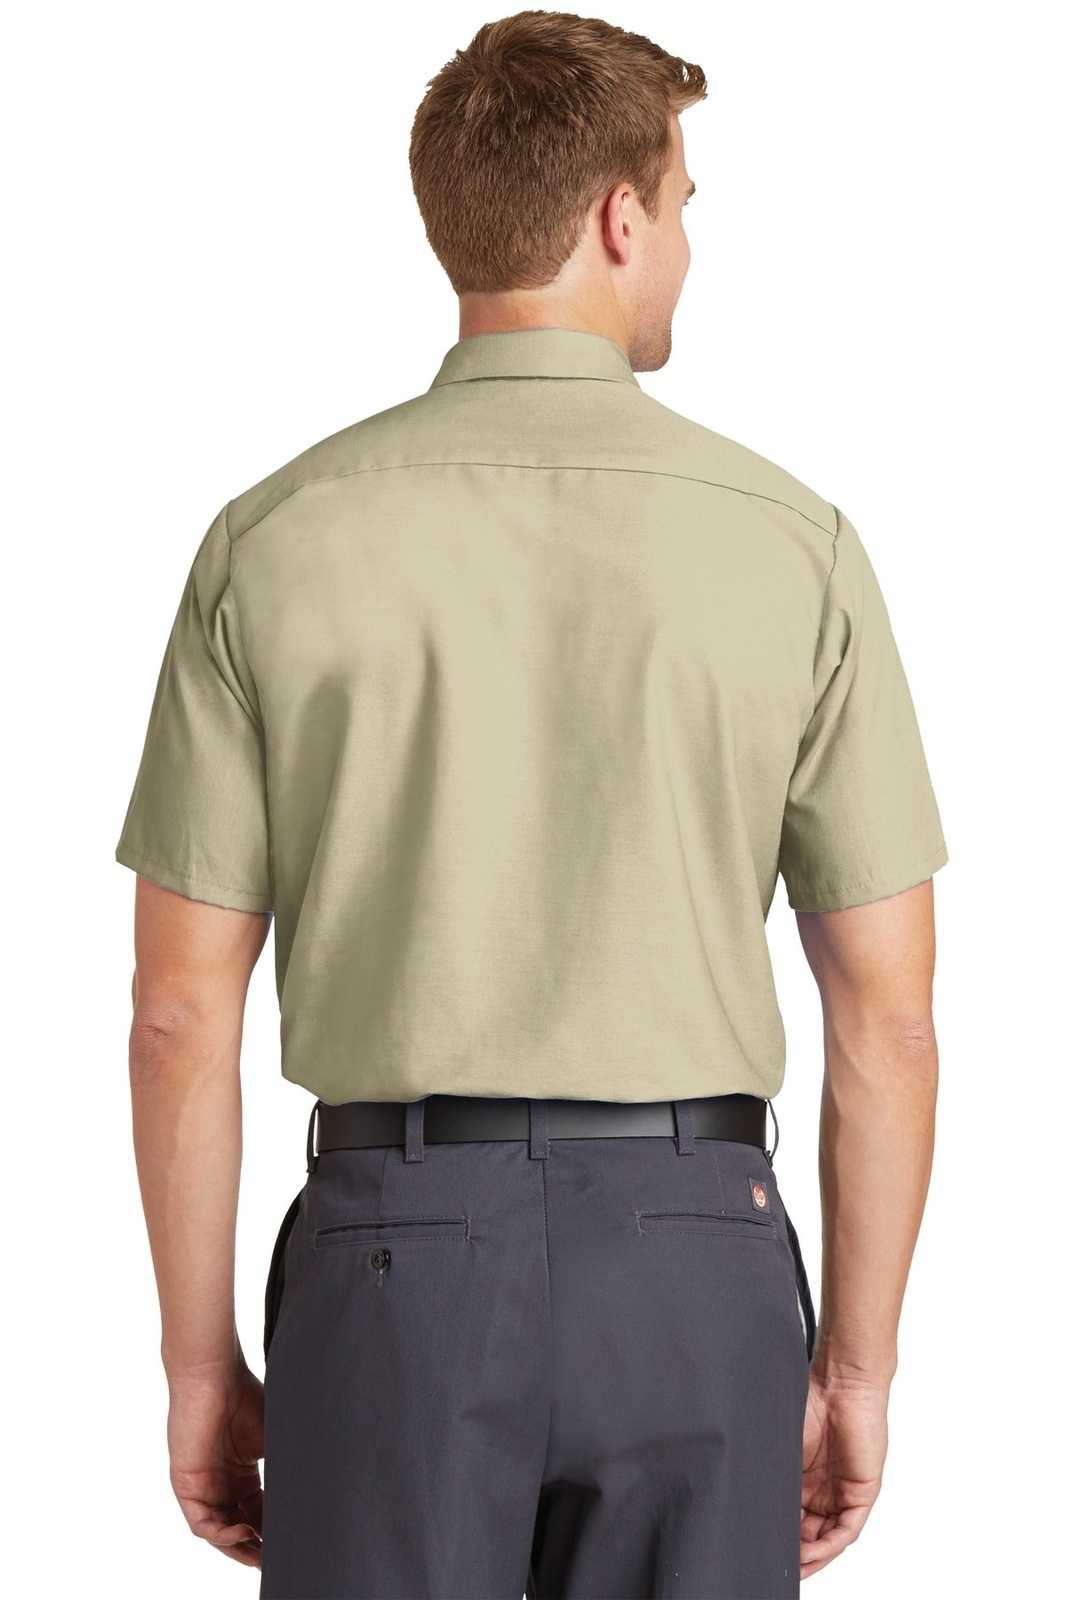 Red Kap SP24 Short Sleeve Industrial Work Shirt - Light Tan - HIT a Double - 1